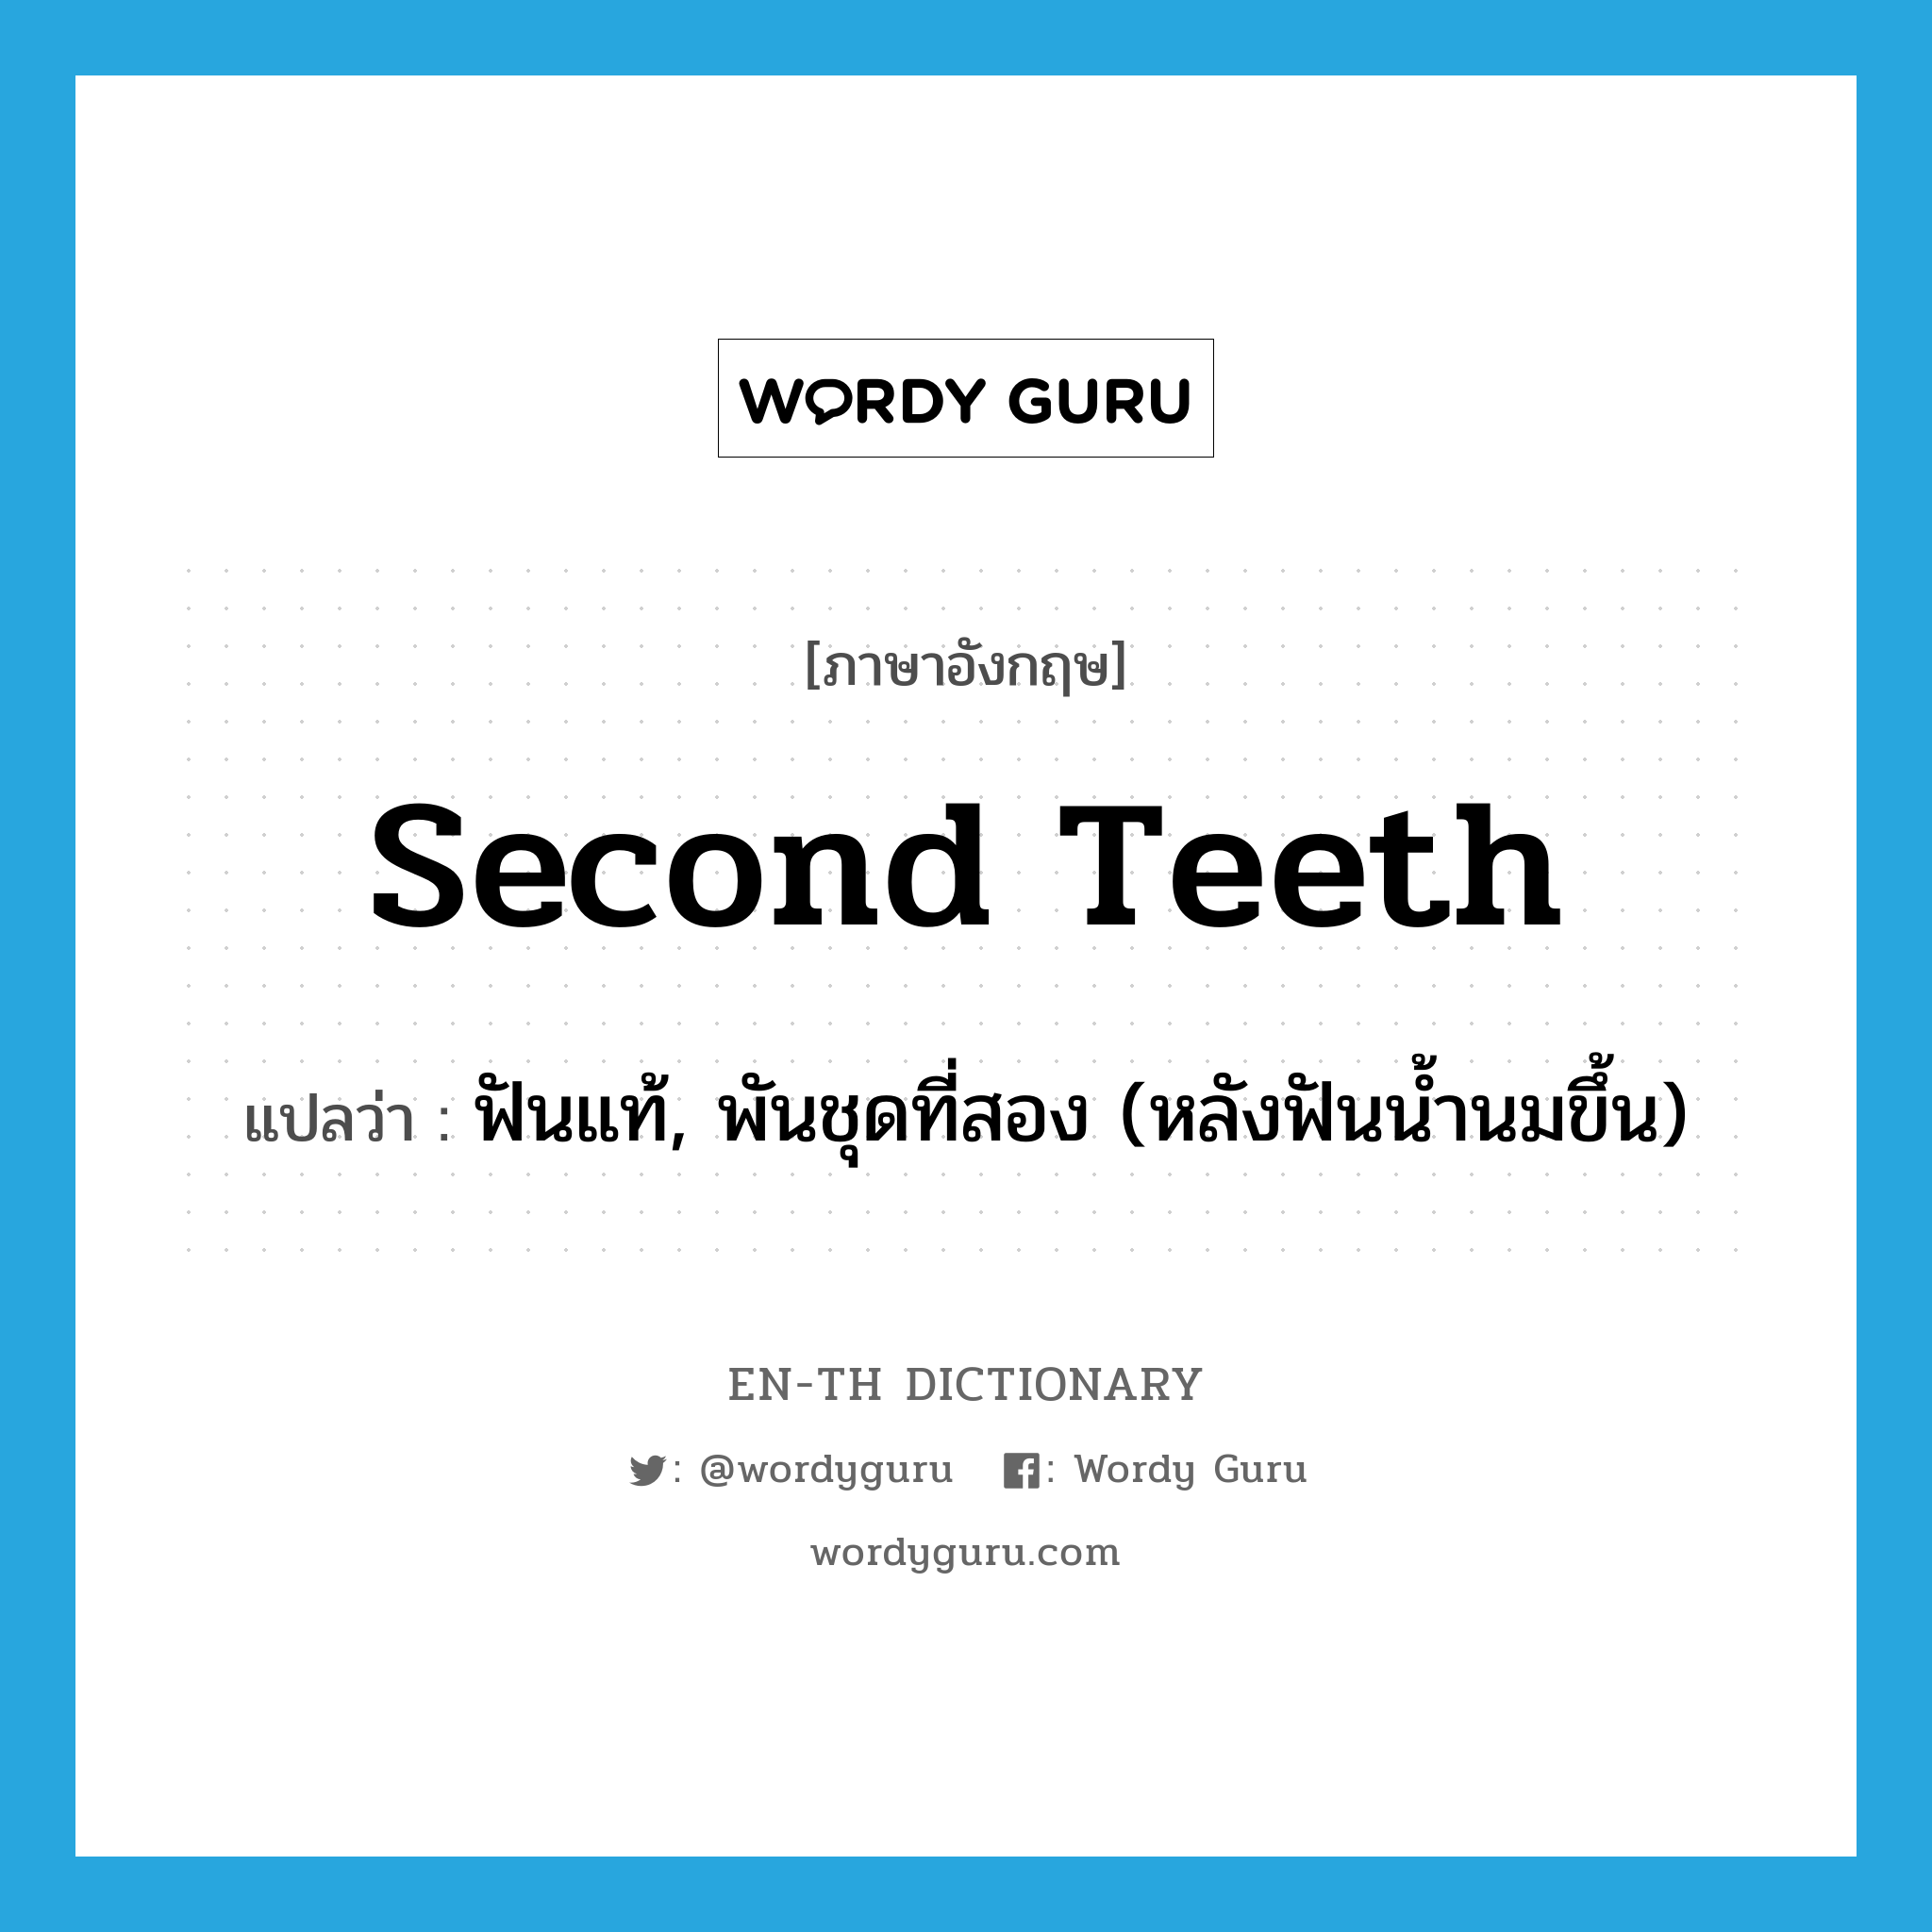 ฟันแท้, พันชุดที่สอง (หลังฟันน้ำนมขึ้น) ภาษาอังกฤษ?, คำศัพท์ภาษาอังกฤษ ฟันแท้, พันชุดที่สอง (หลังฟันน้ำนมขึ้น) แปลว่า second teeth ประเภท N หมวด N